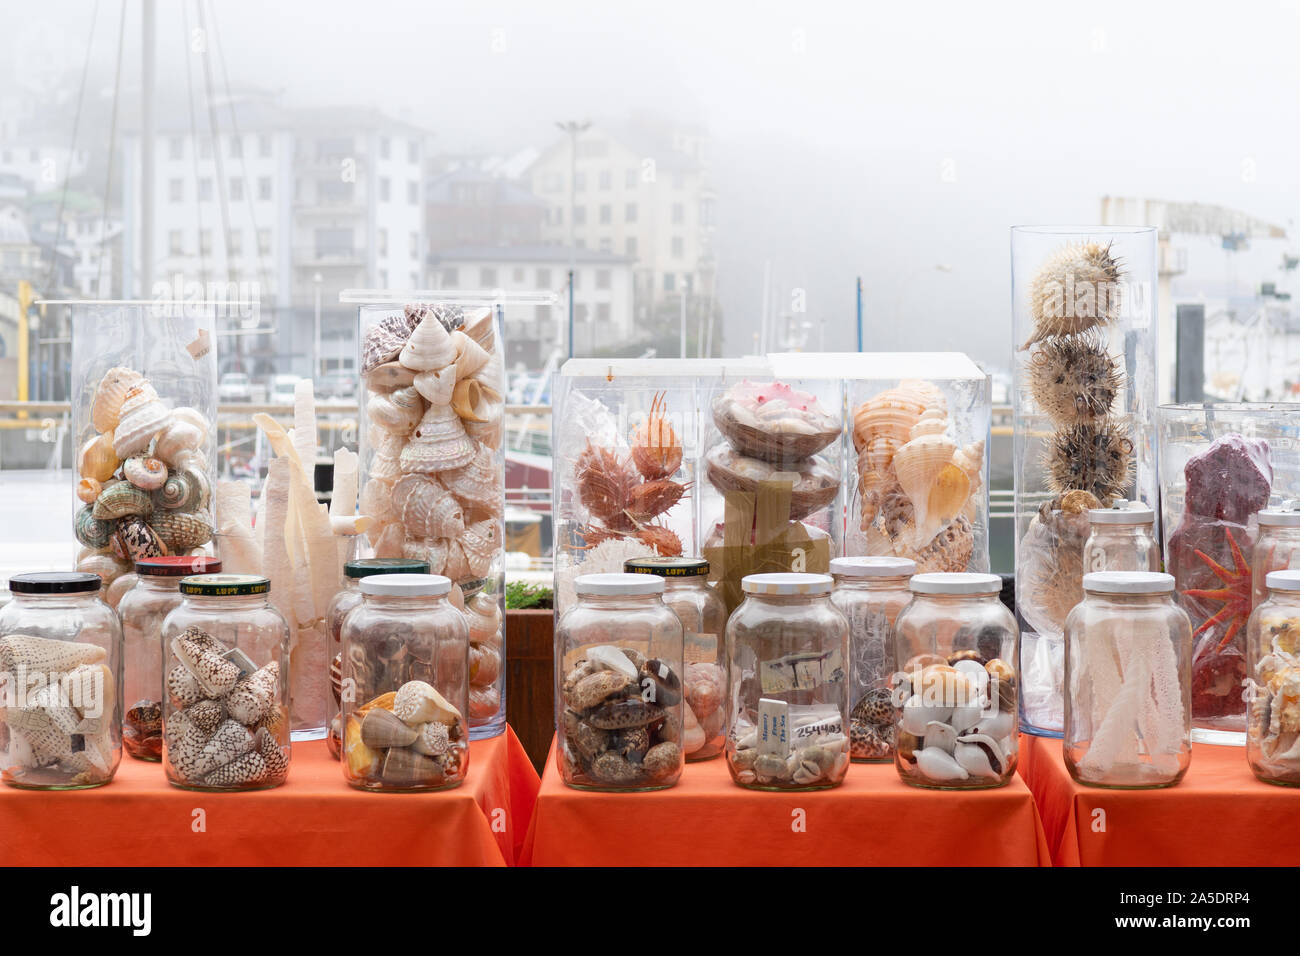 Le commerce des coquillages - coquillages à vendre dans la ville de Luarca, Asturias, Espagne, Europe Banque D'Images